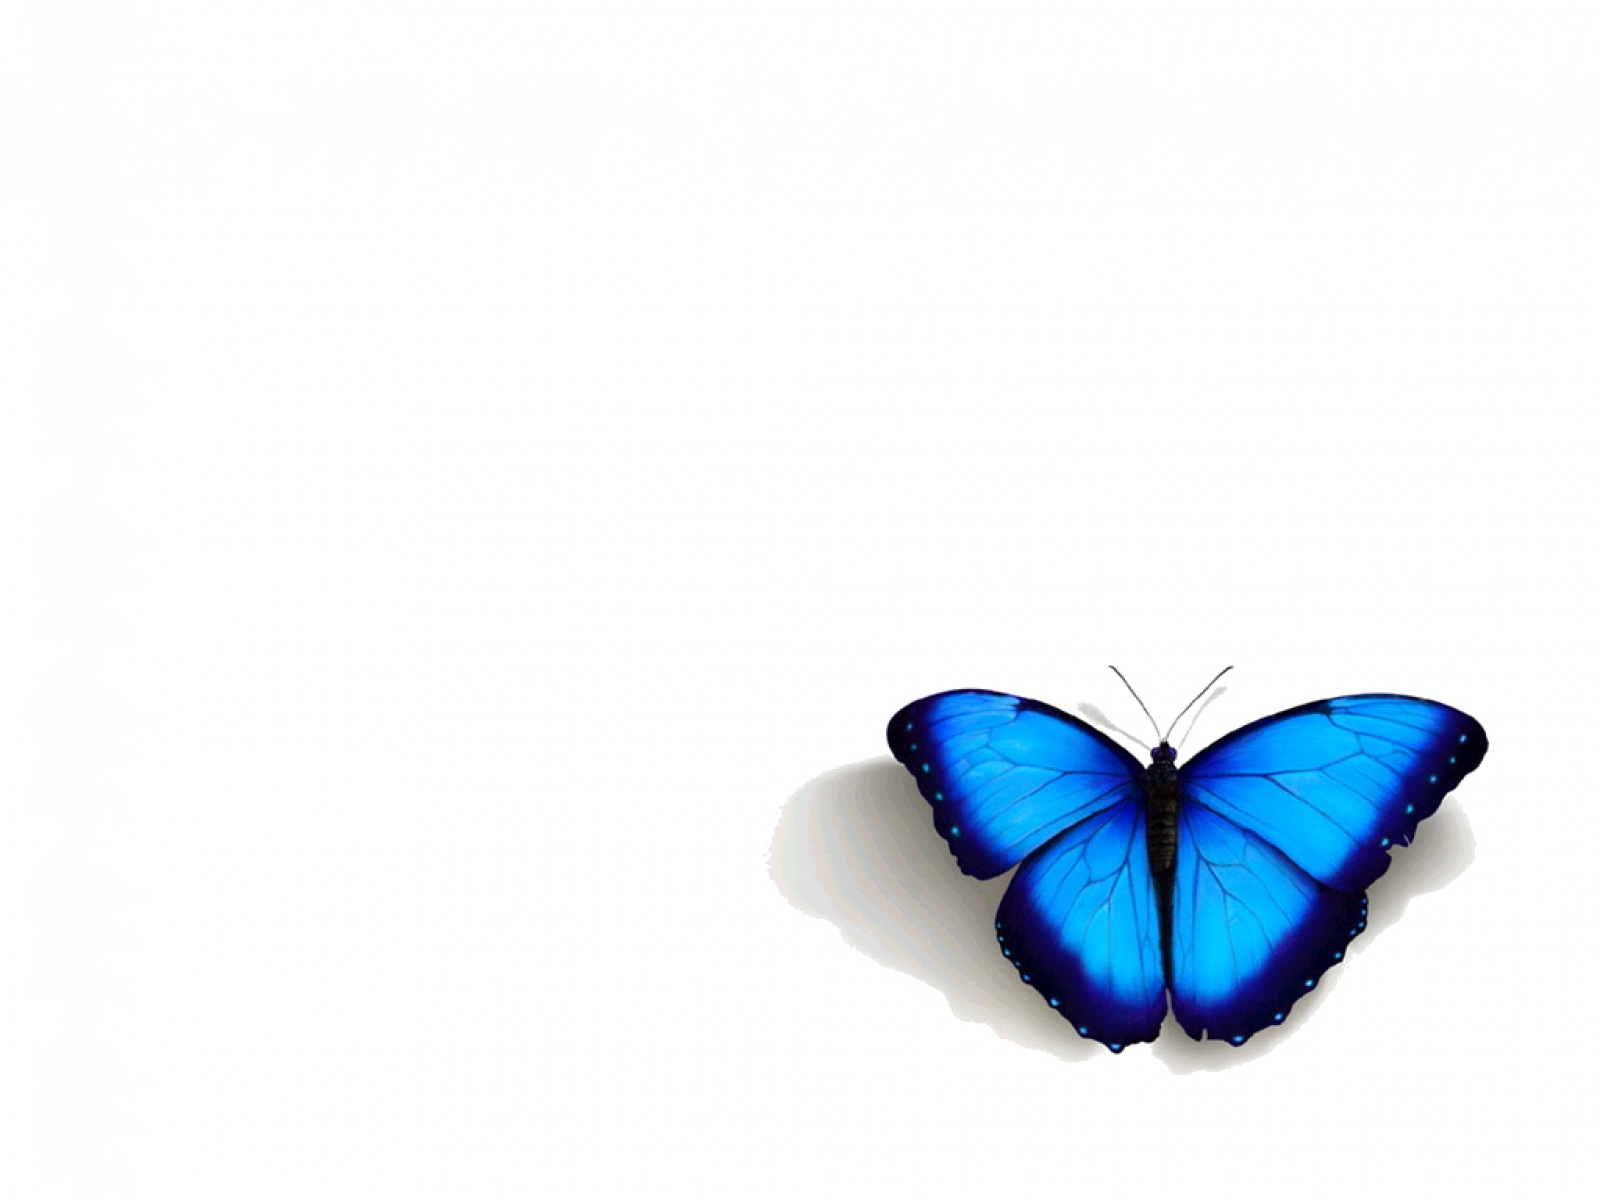 Blue Butterfly Wallpaper HD In Cute Imageci